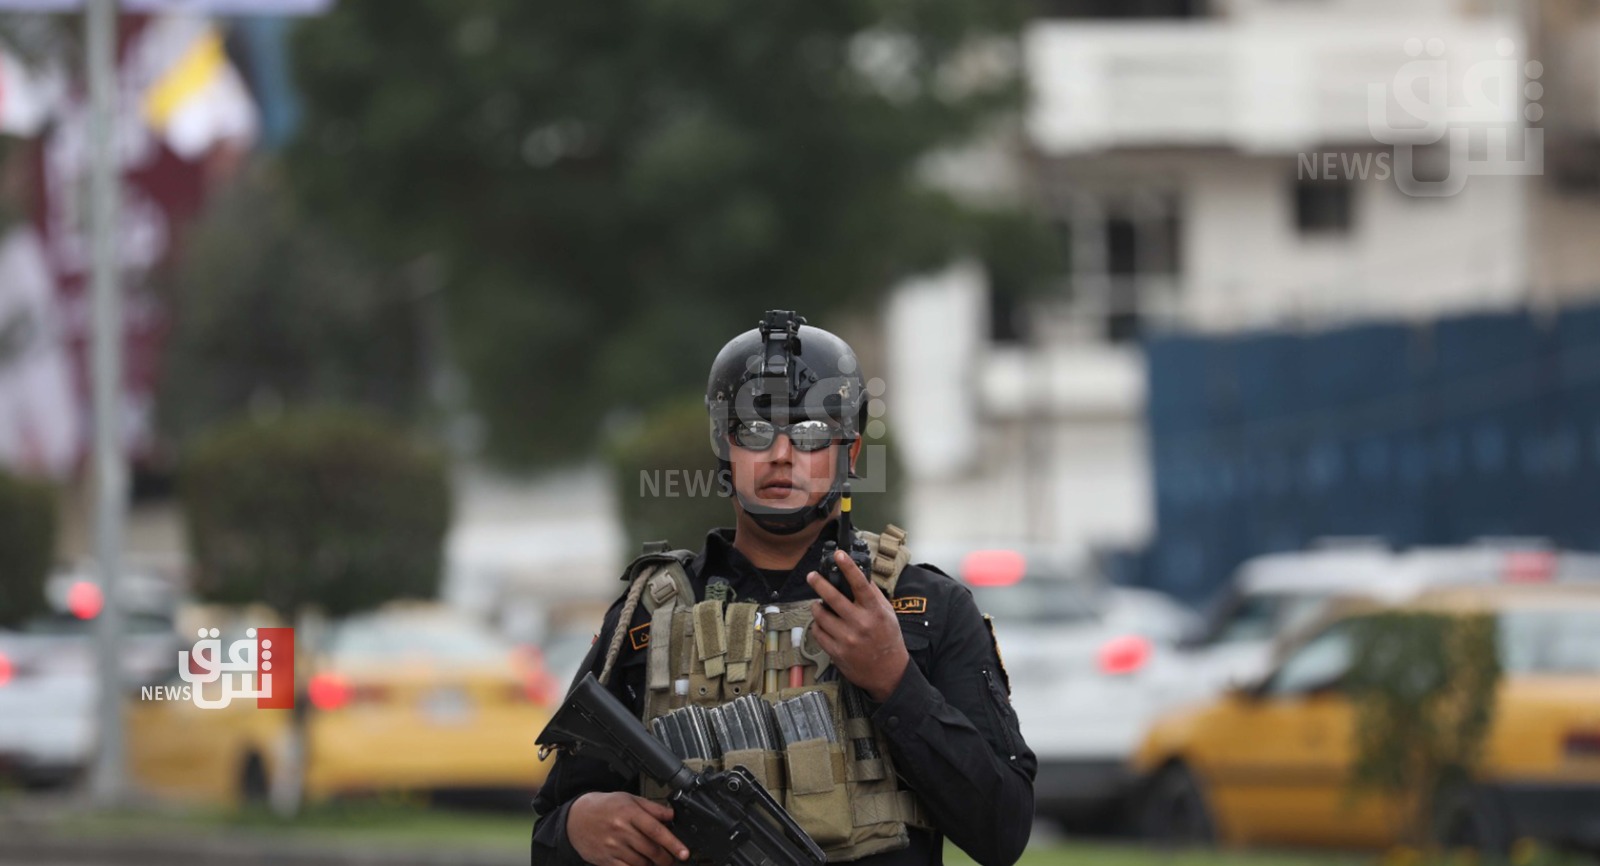 شرطة بغداد تطارد مجموعة مسلحة تُسمى "درع العشيرة"